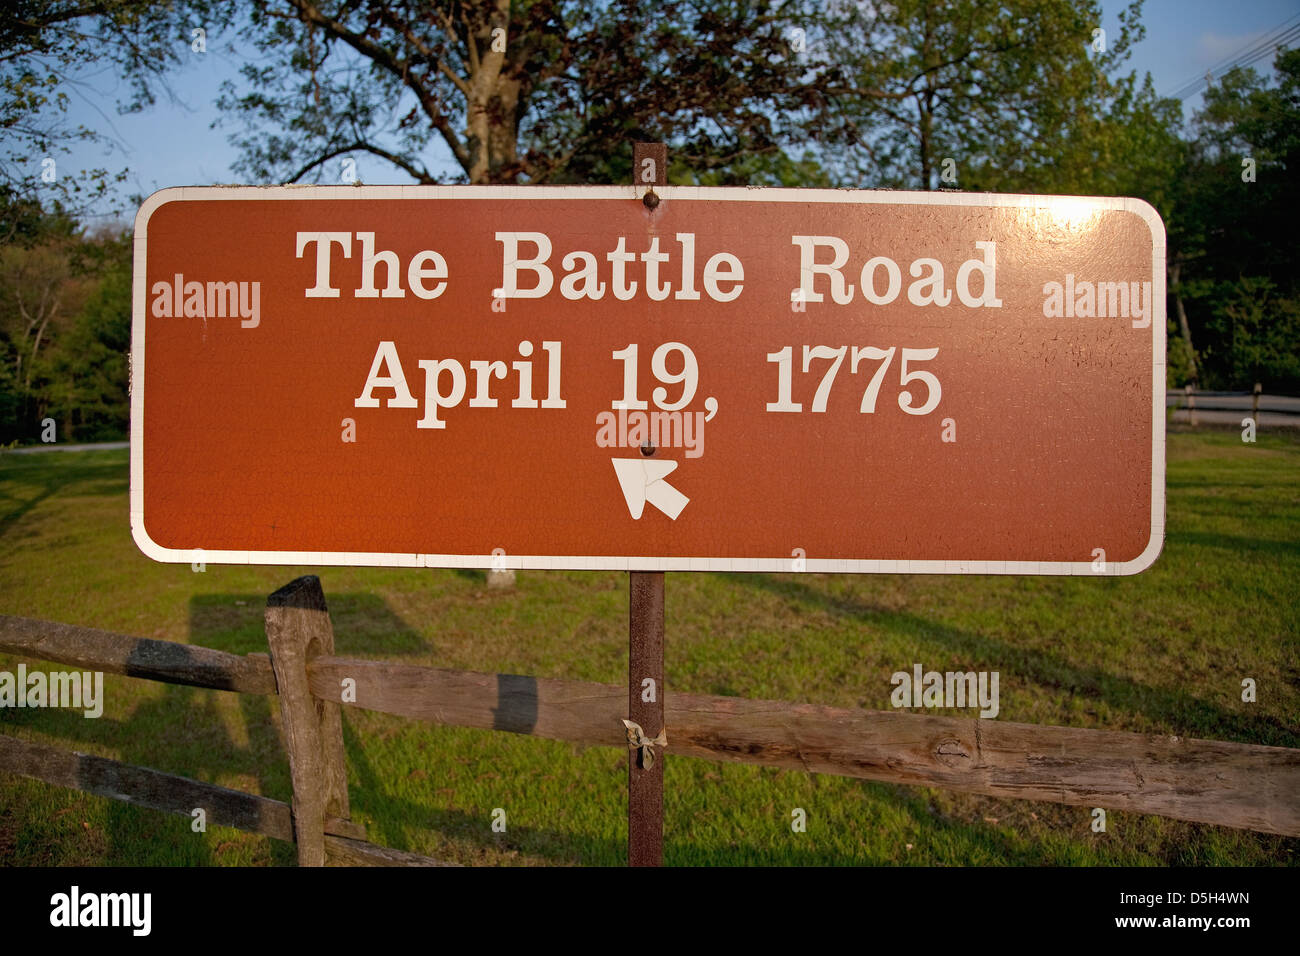 Signe pour 'la bataille route' pour le 19 avril 1775 dans la ville historique de Concord/Lexington zone où a commencé la guerre révolutionnaire Banque D'Images